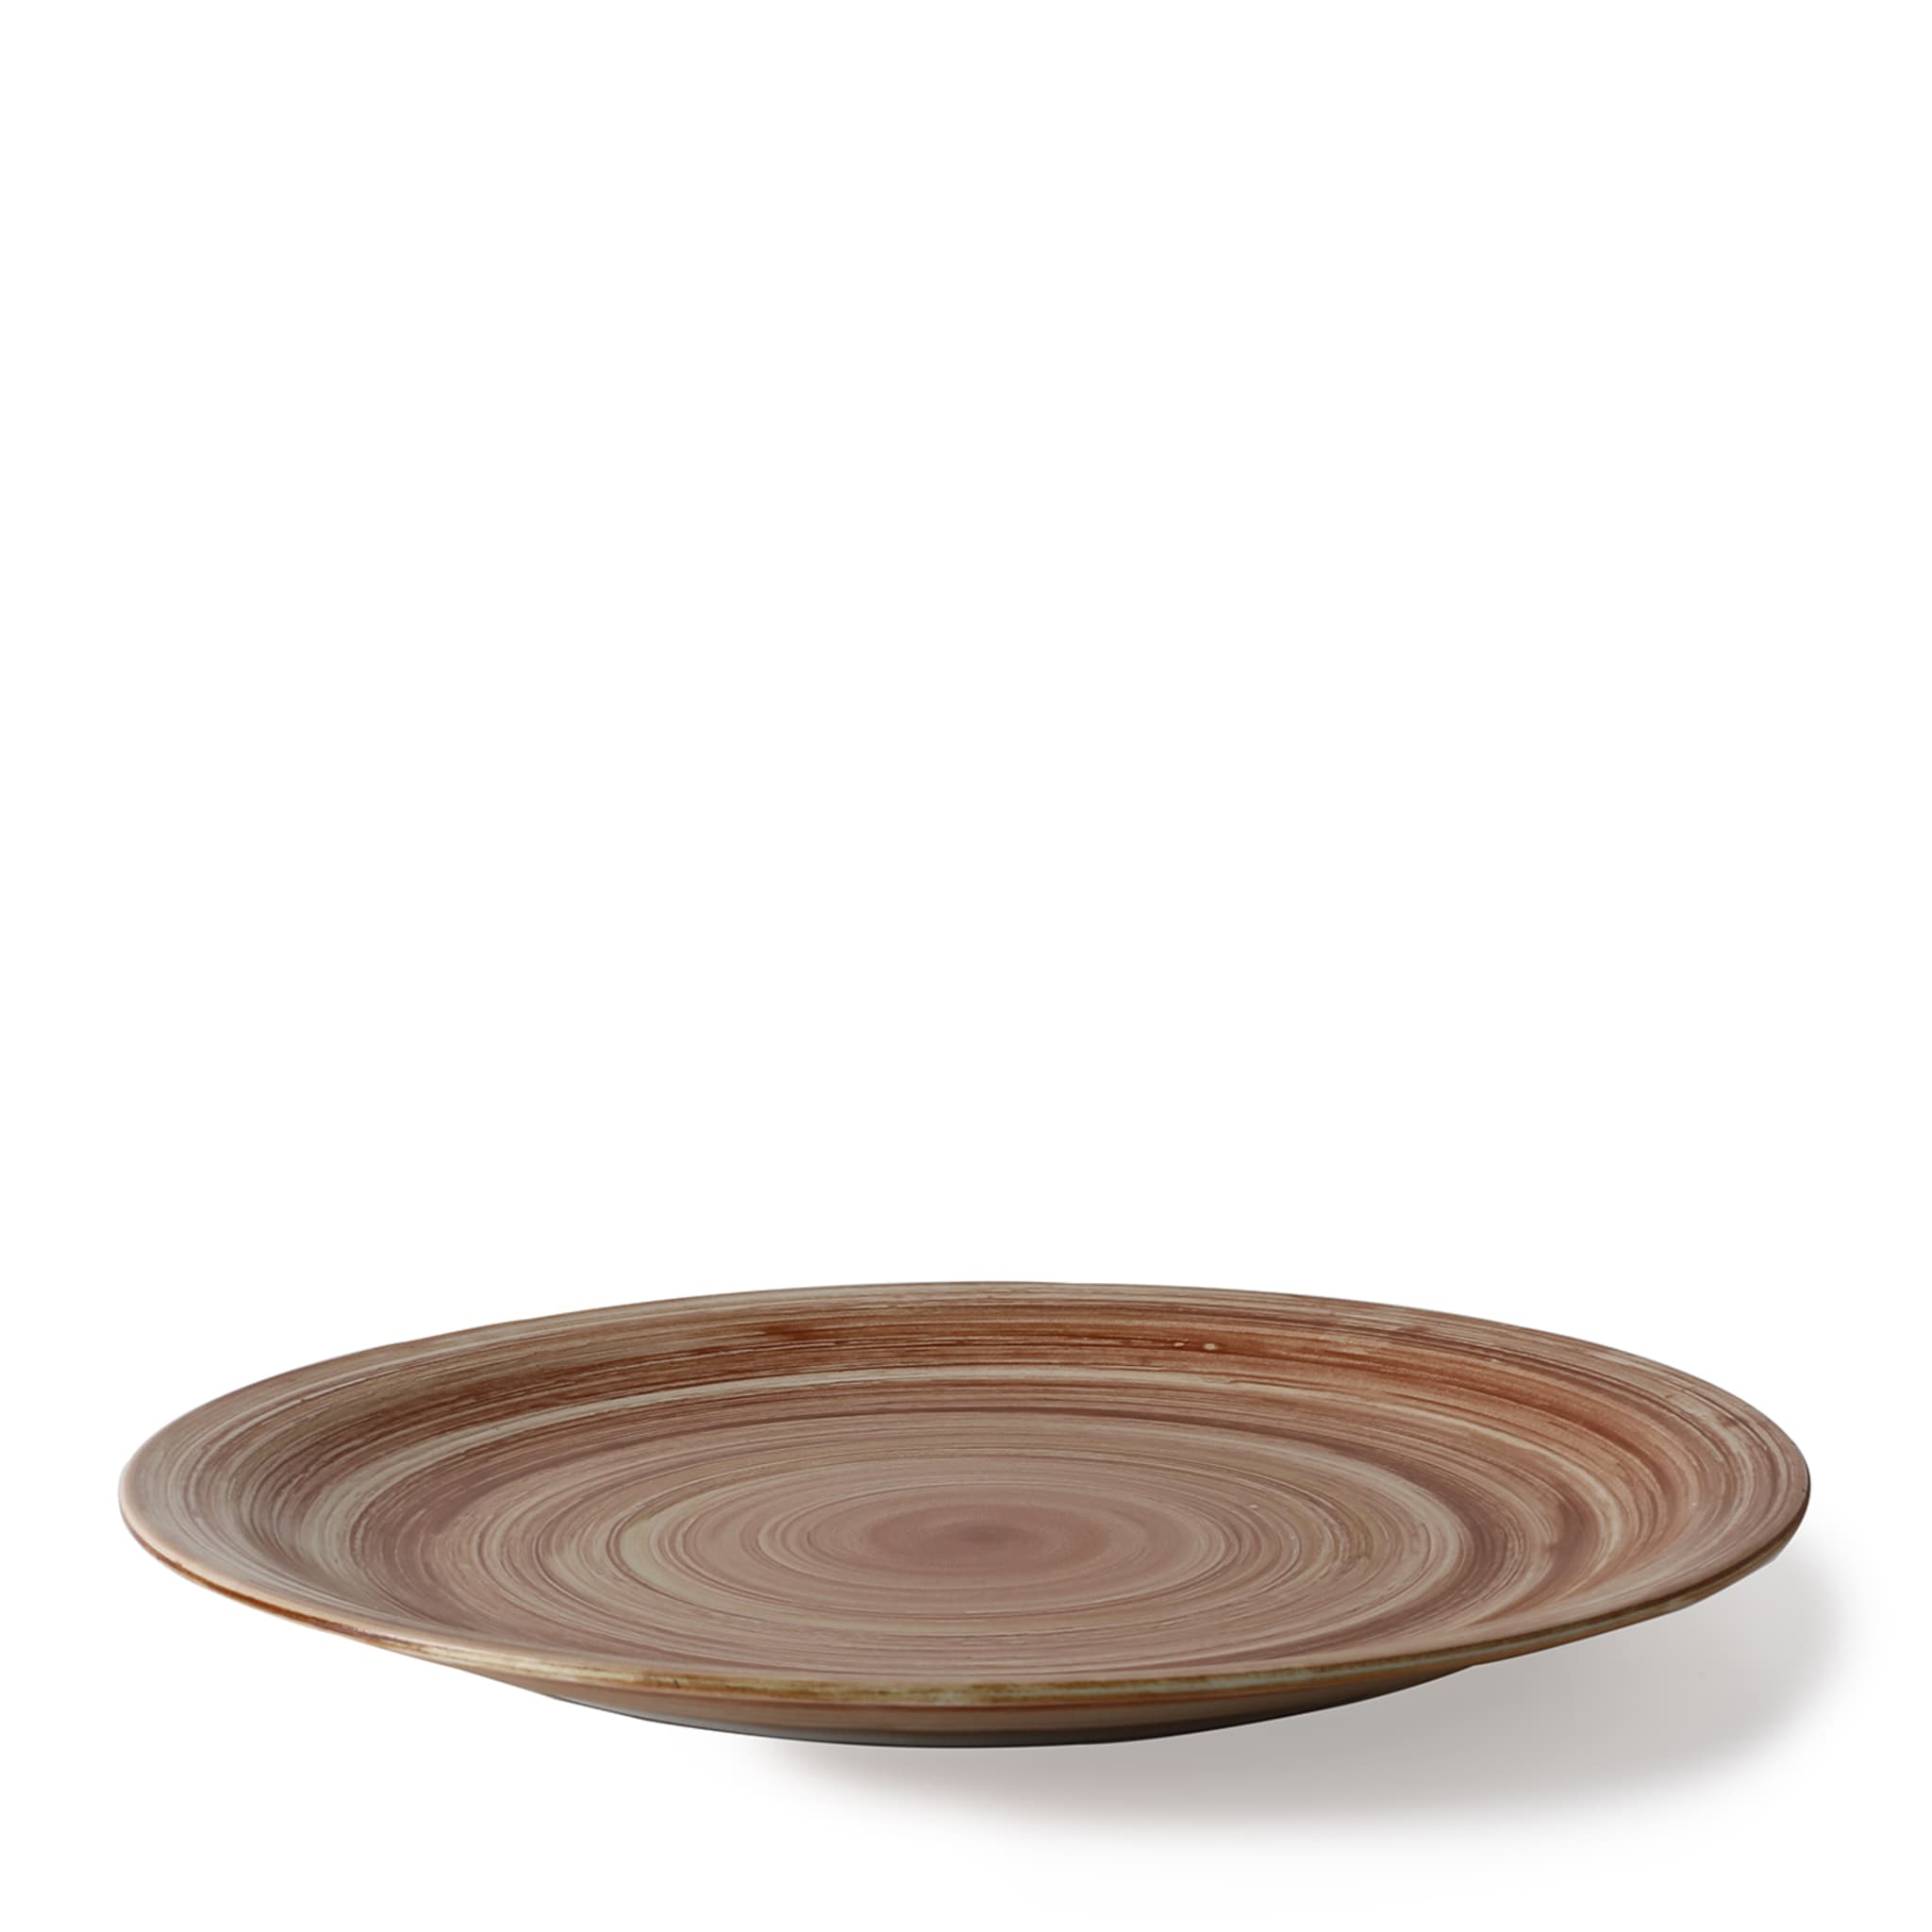 Legno Round Brown Dinner Plate - Alternative view 1